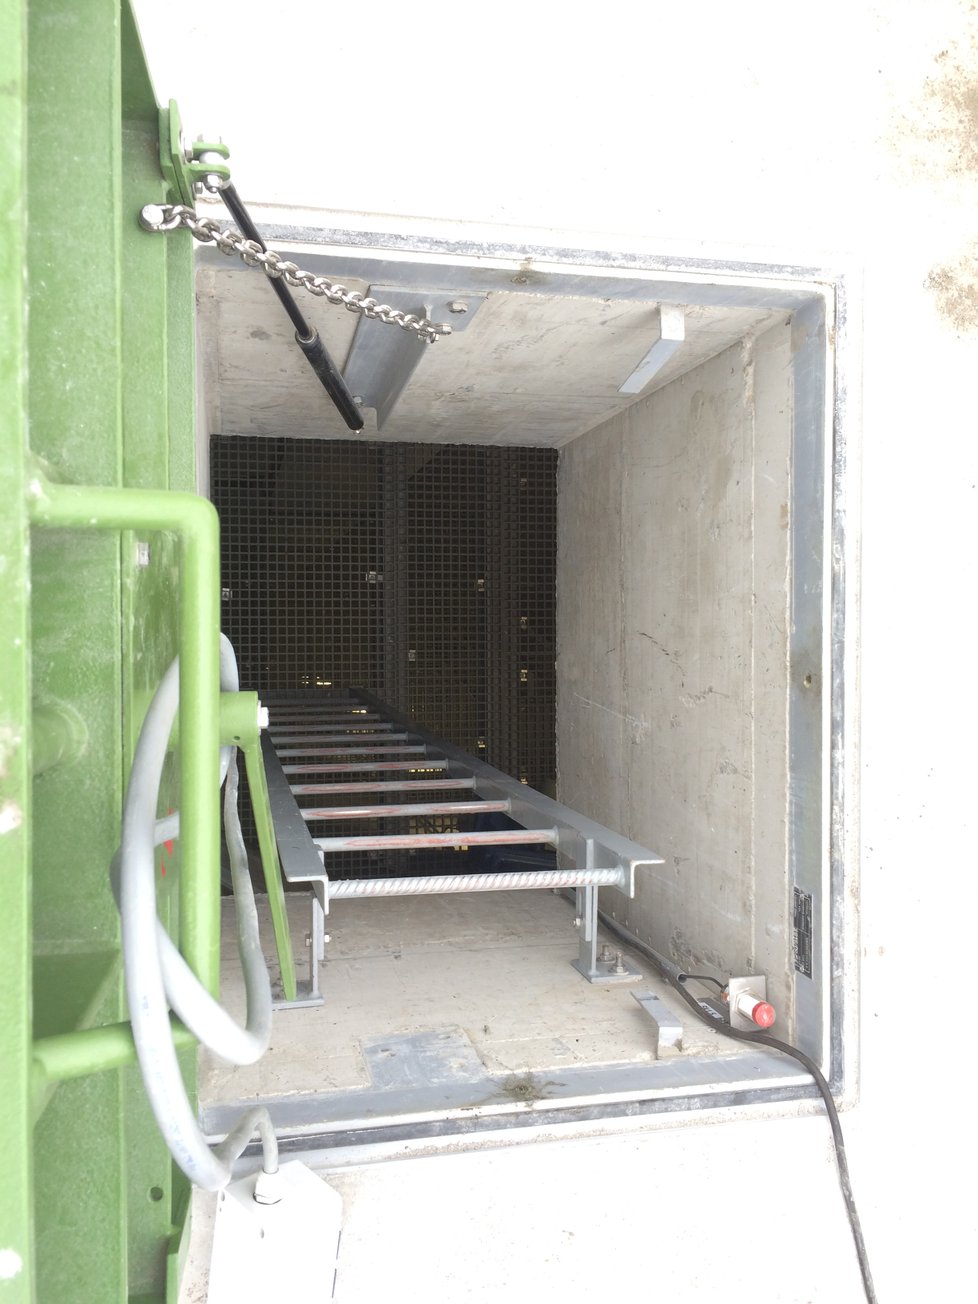 Kolektor je přístupný žebříky a výtahem.